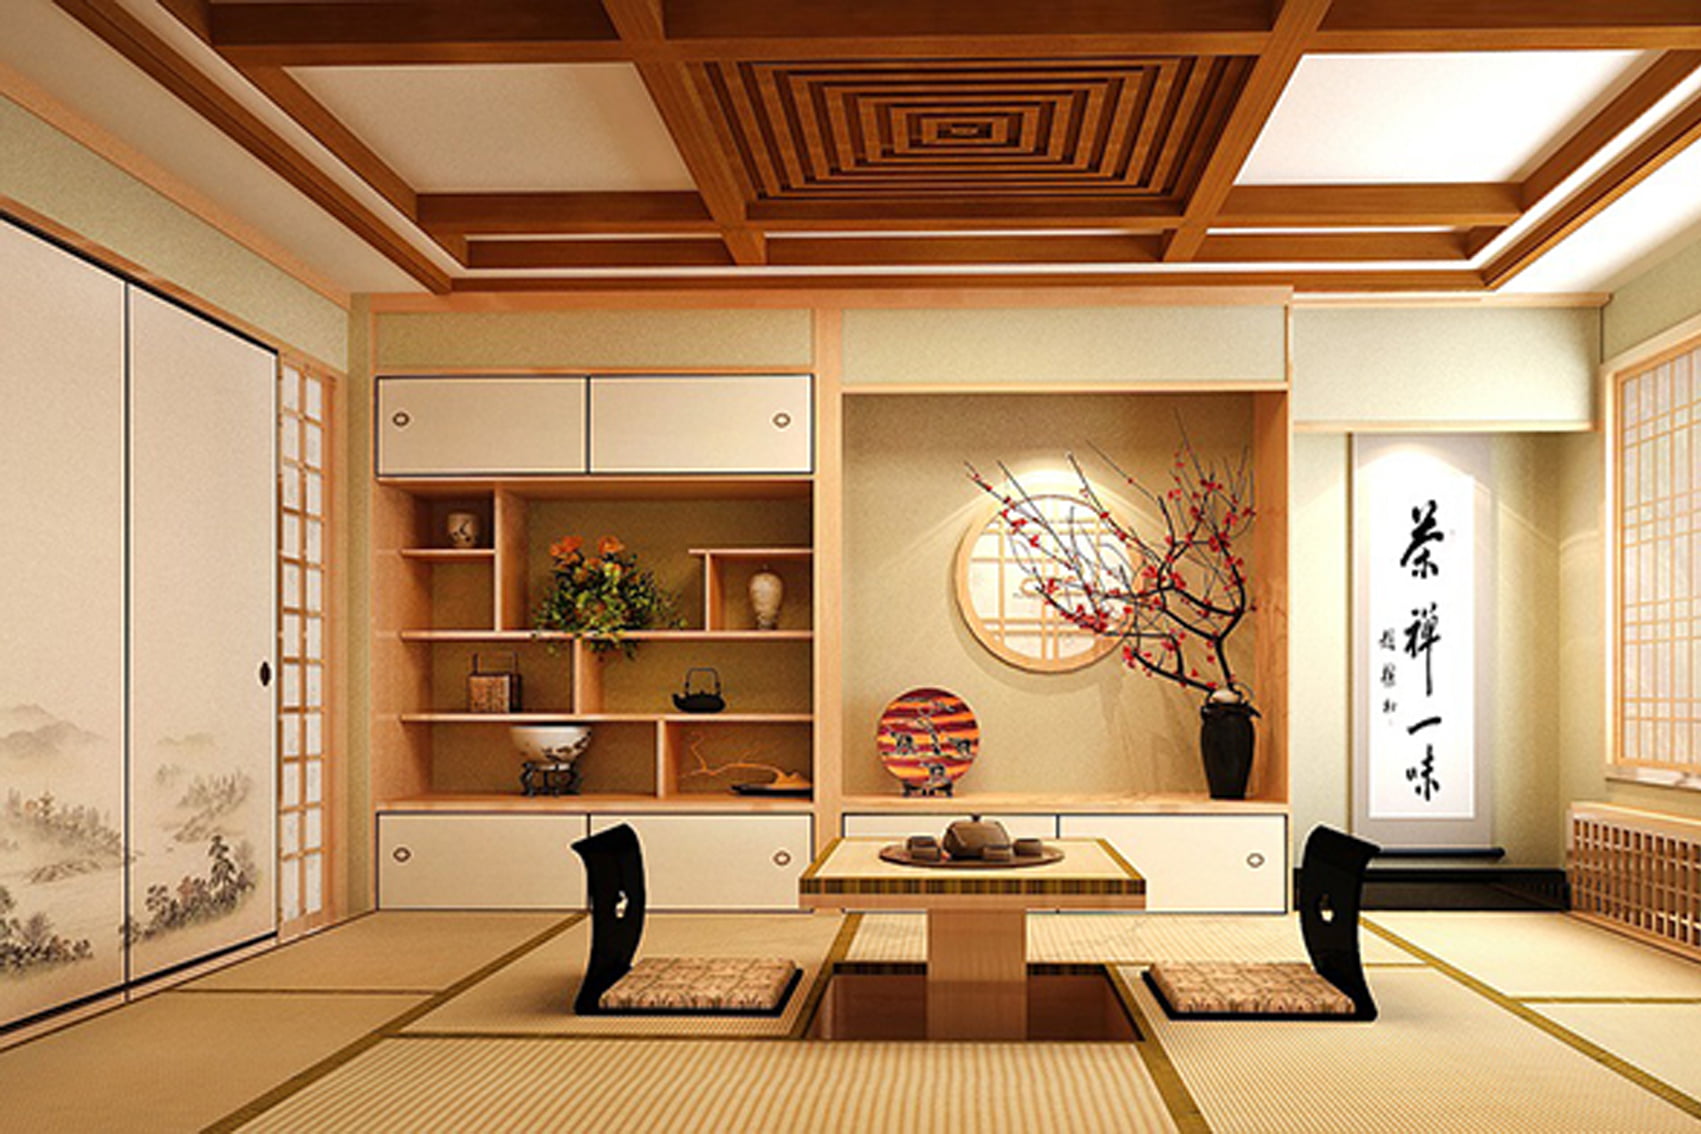 Thiết kế nội thất chung cư theo phong cách Nhật Bản đang trở thành xu hướng hot nhất hiện nay. Với thiết kế đơn giản và tối giản, các đường nét thanh thoát và màu sắc trang nhã, không gian sống của bạn trở nên trang nhã và thanh lịch hơn bao giờ hết. Dù là căn hộ nhỏ hay rộng lớn, thiết kế này vẫn giữ được tính thẩm mỹ và chức năng tối đa. Truy cập ngay để xem hình ảnh liên quan đến từ khóa này!